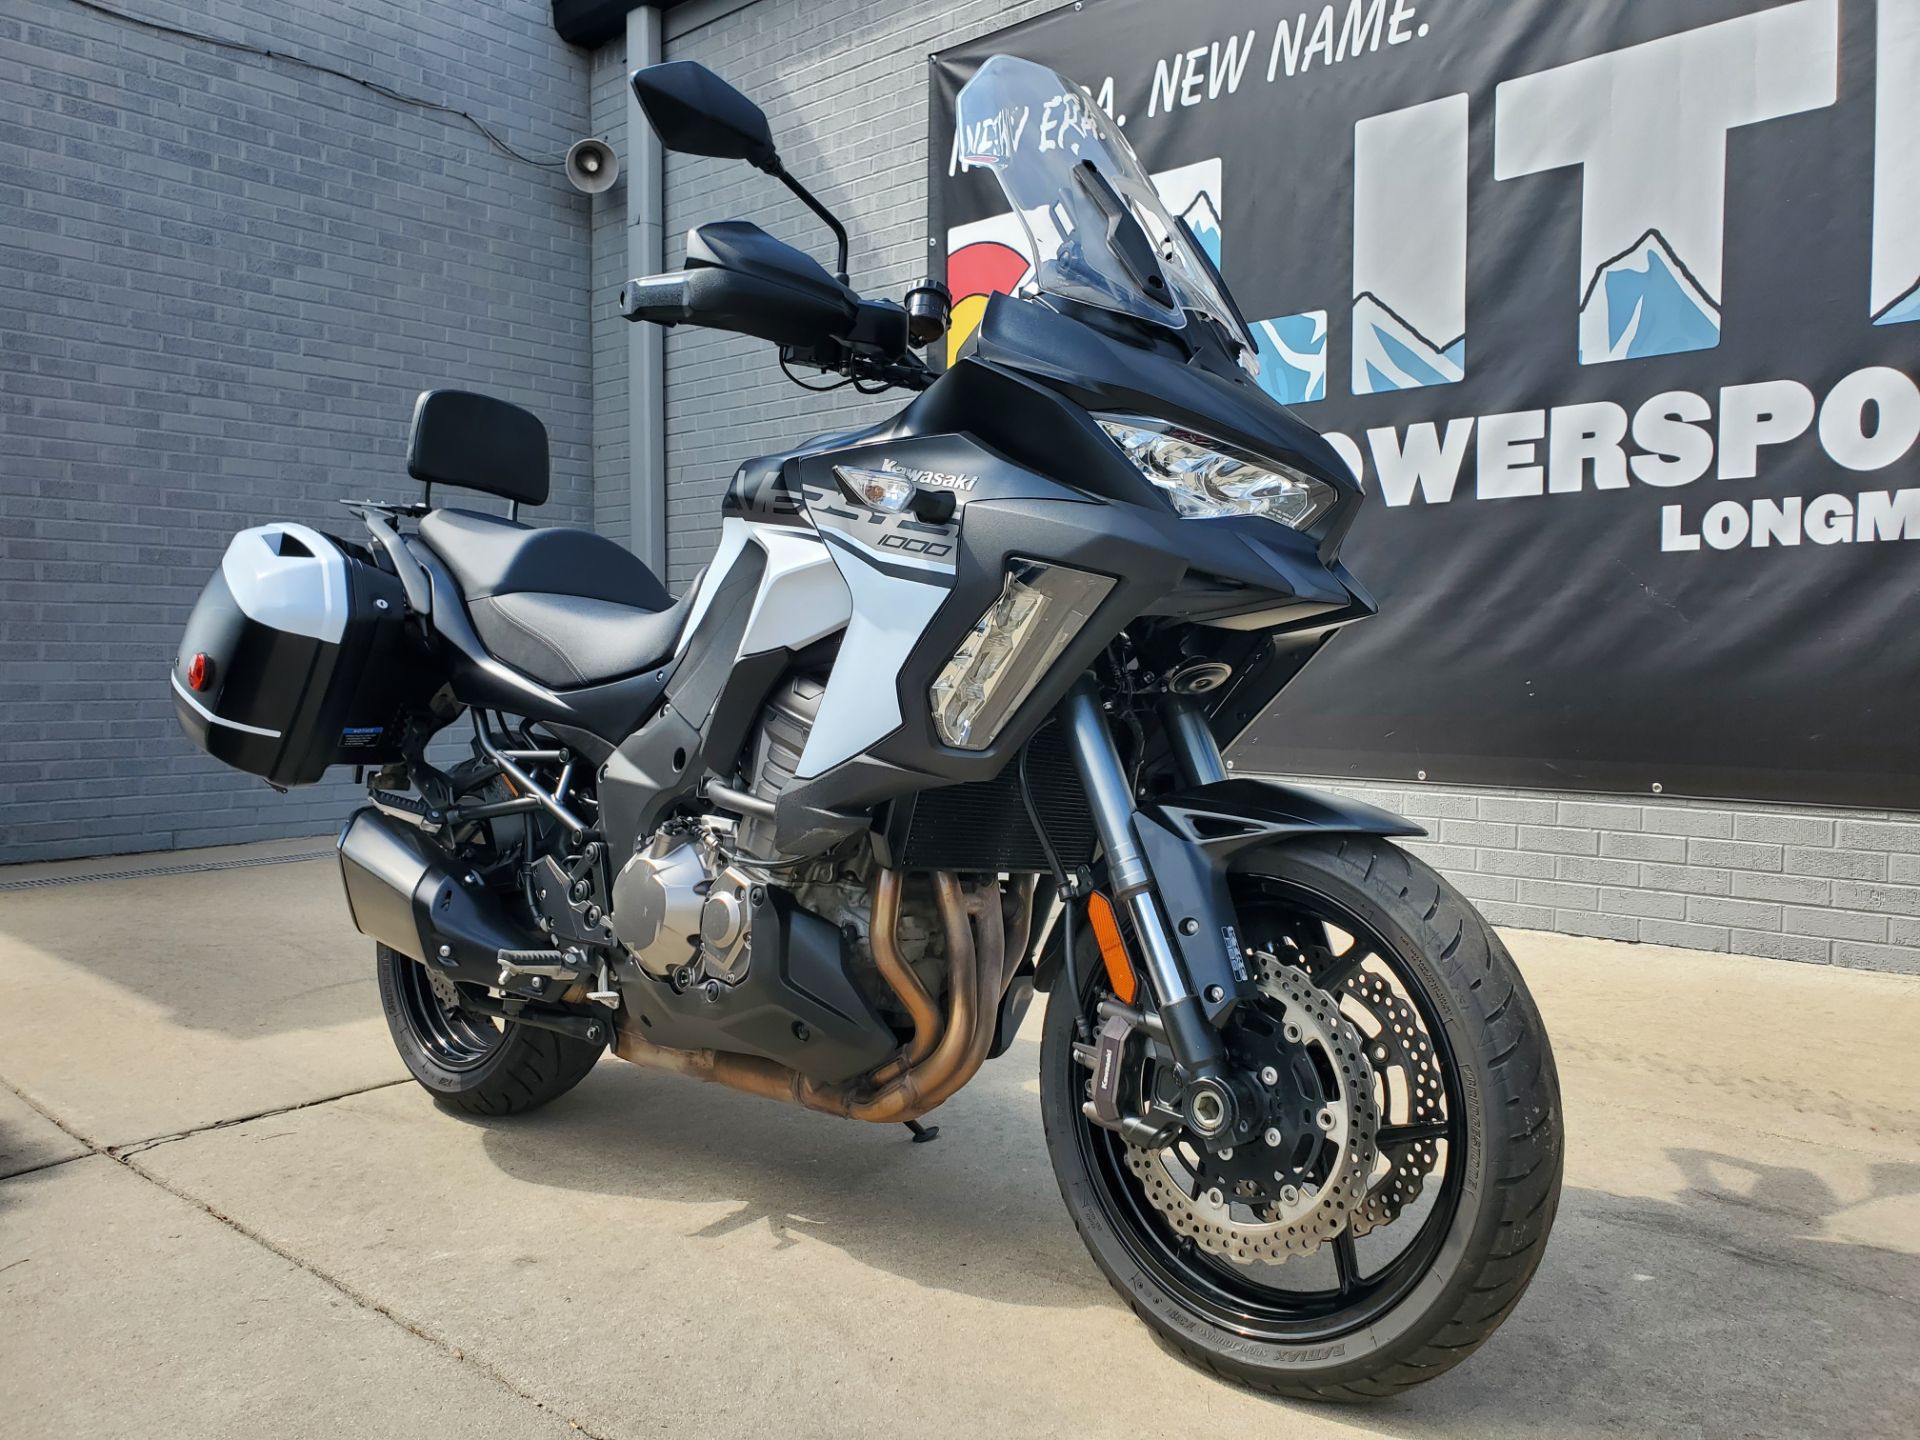 2019 Kawasaki Versys 1000 SE LT+ in Longmont, Colorado - Photo 3